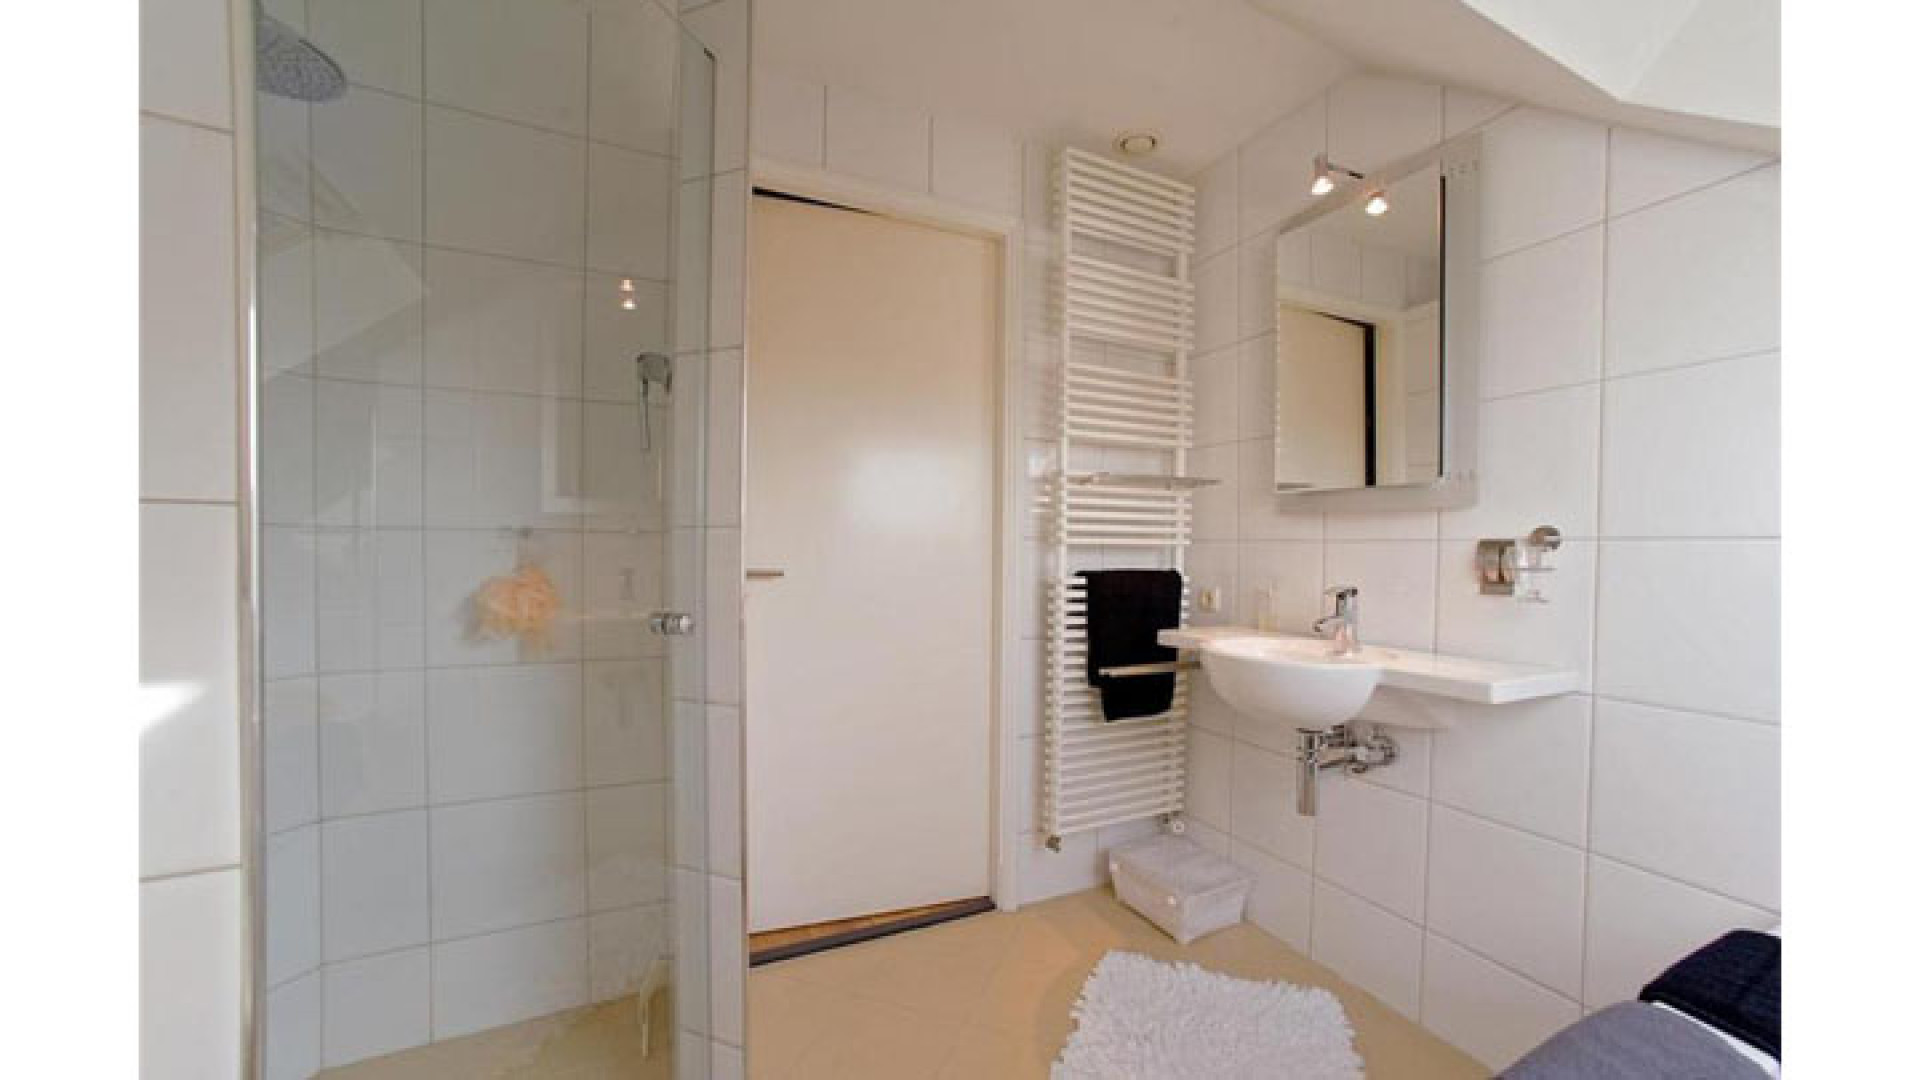 Binnenkijken in appartement met zwembad en sauna van Hans Klok. Zie foto's